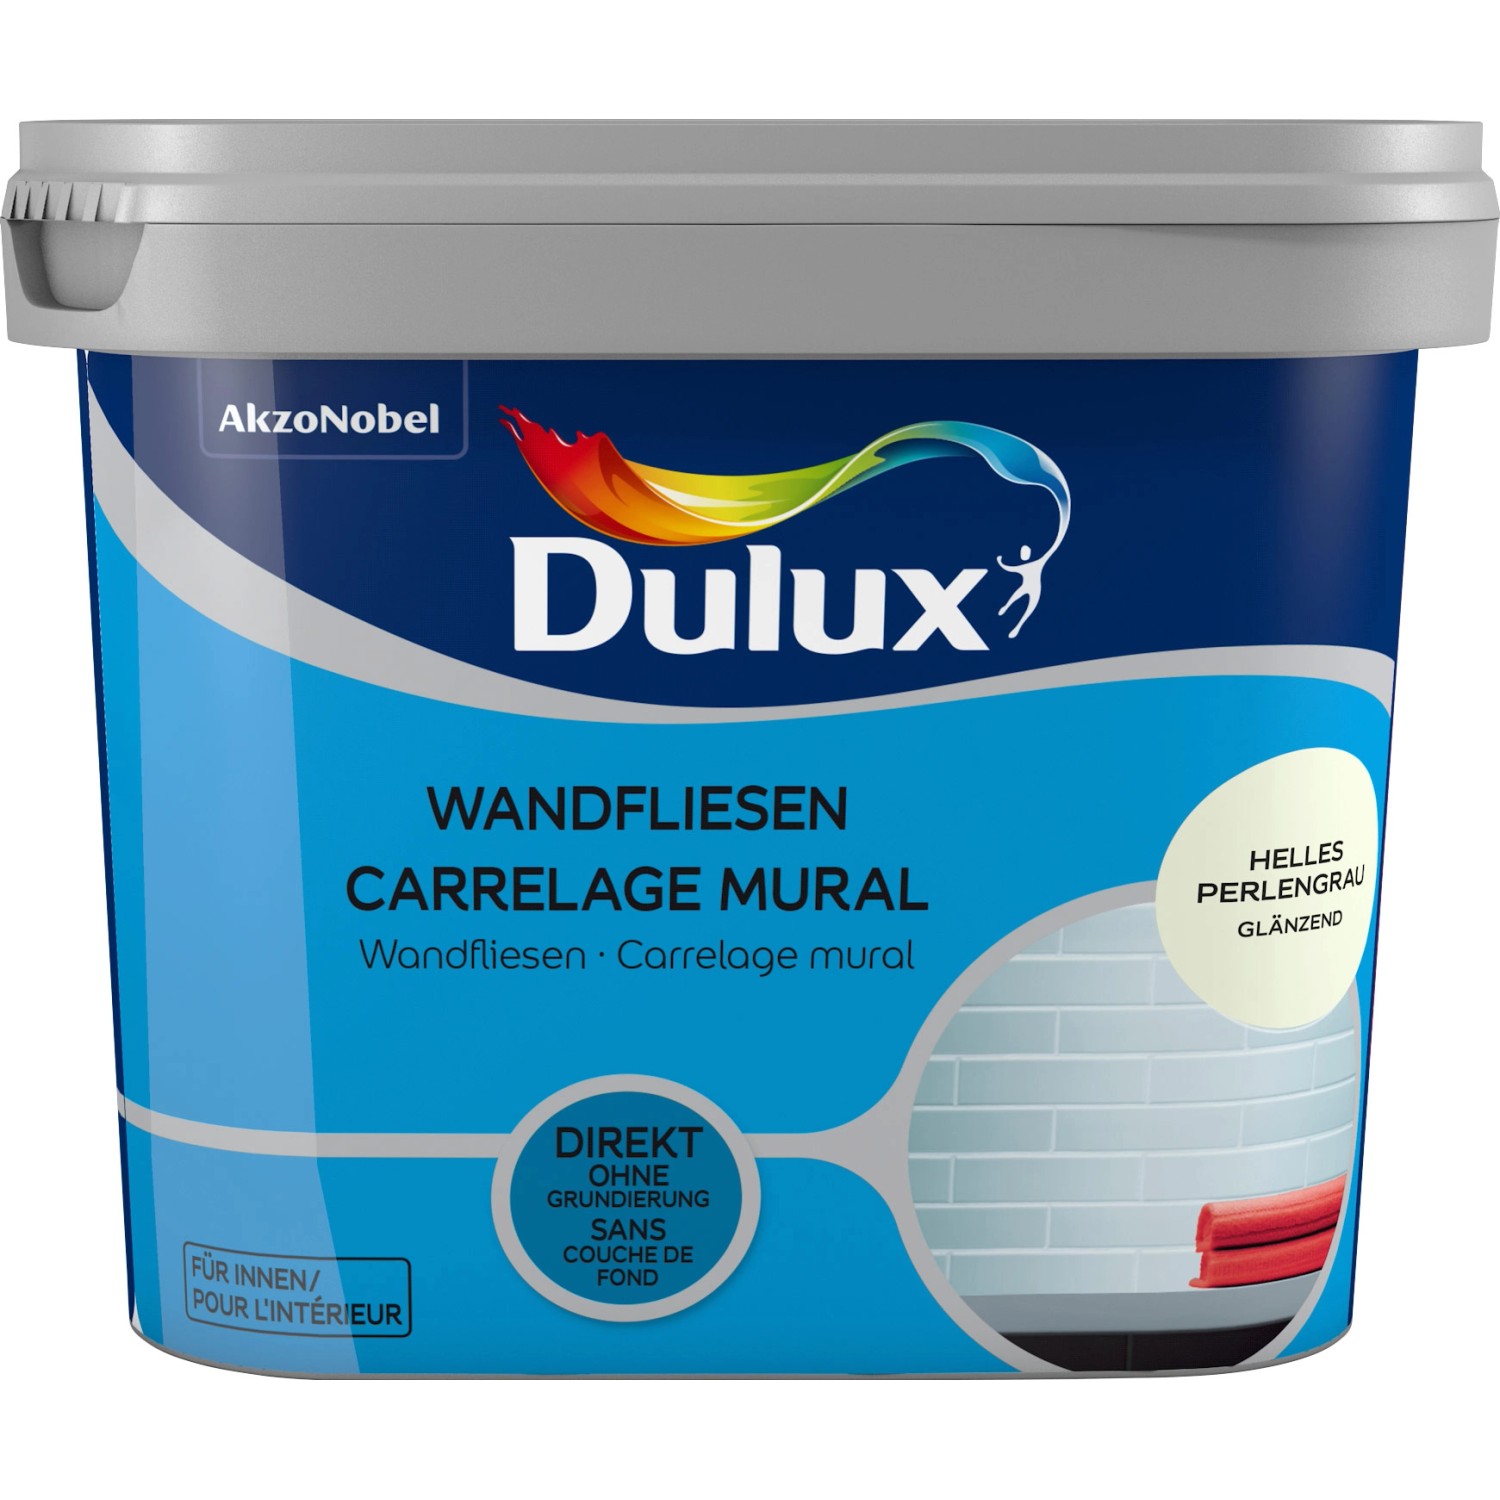 Dulux Fresh Up Wandfliesenlack Glänzend Helles Perlgrau 750 ml